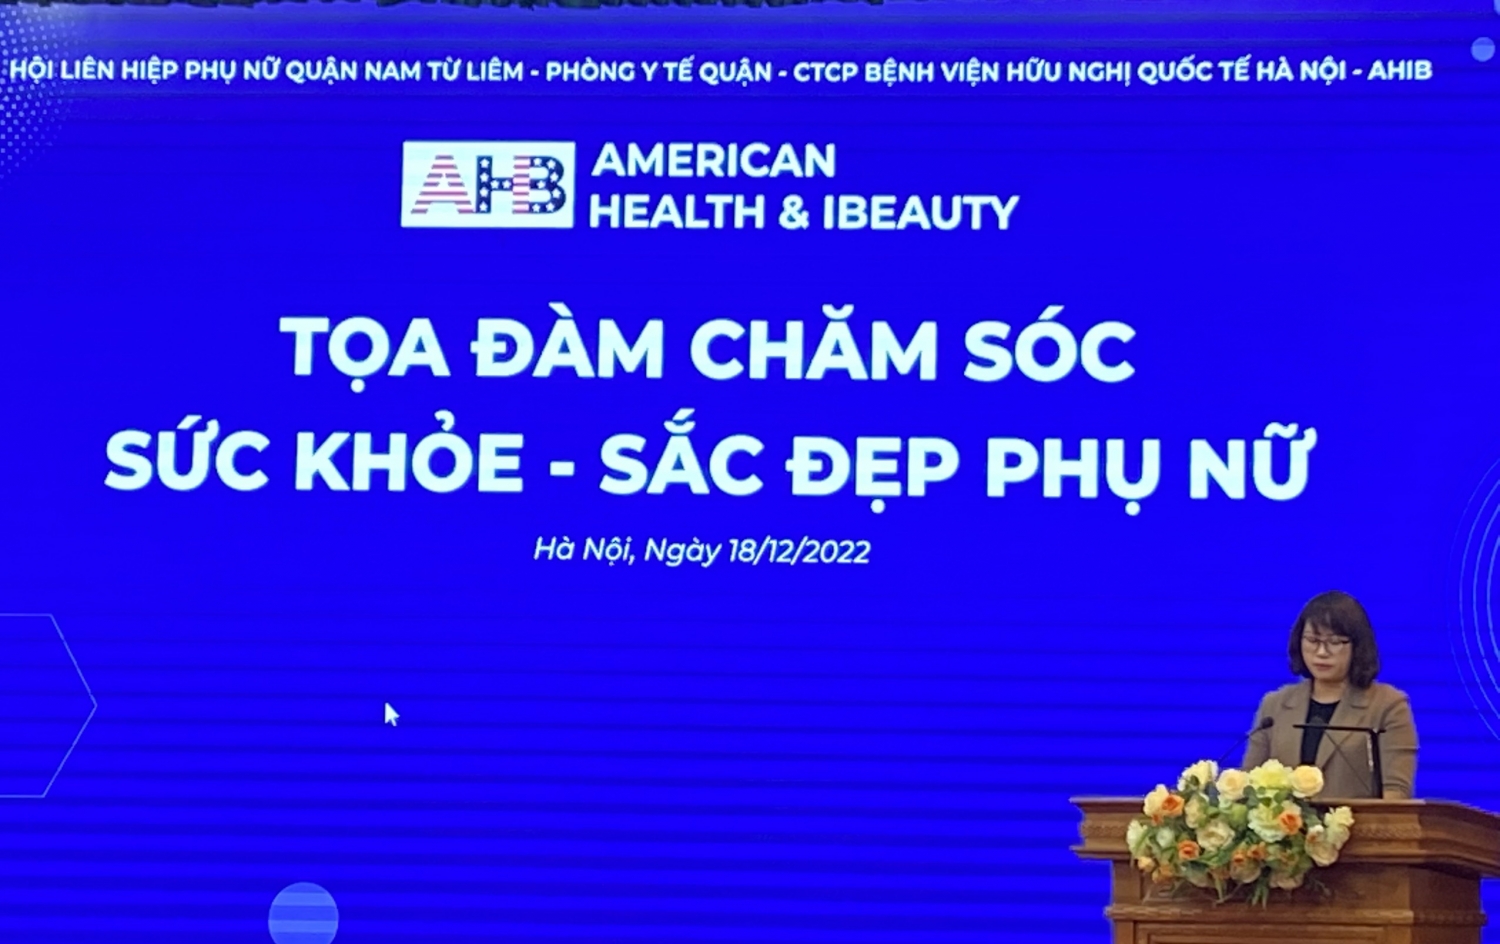 Hà Nội: AHIB phối hợp với quận Nam Từ Liêm tổ chức tọa đàm chăm sóc sức khỏe - sắc đẹp